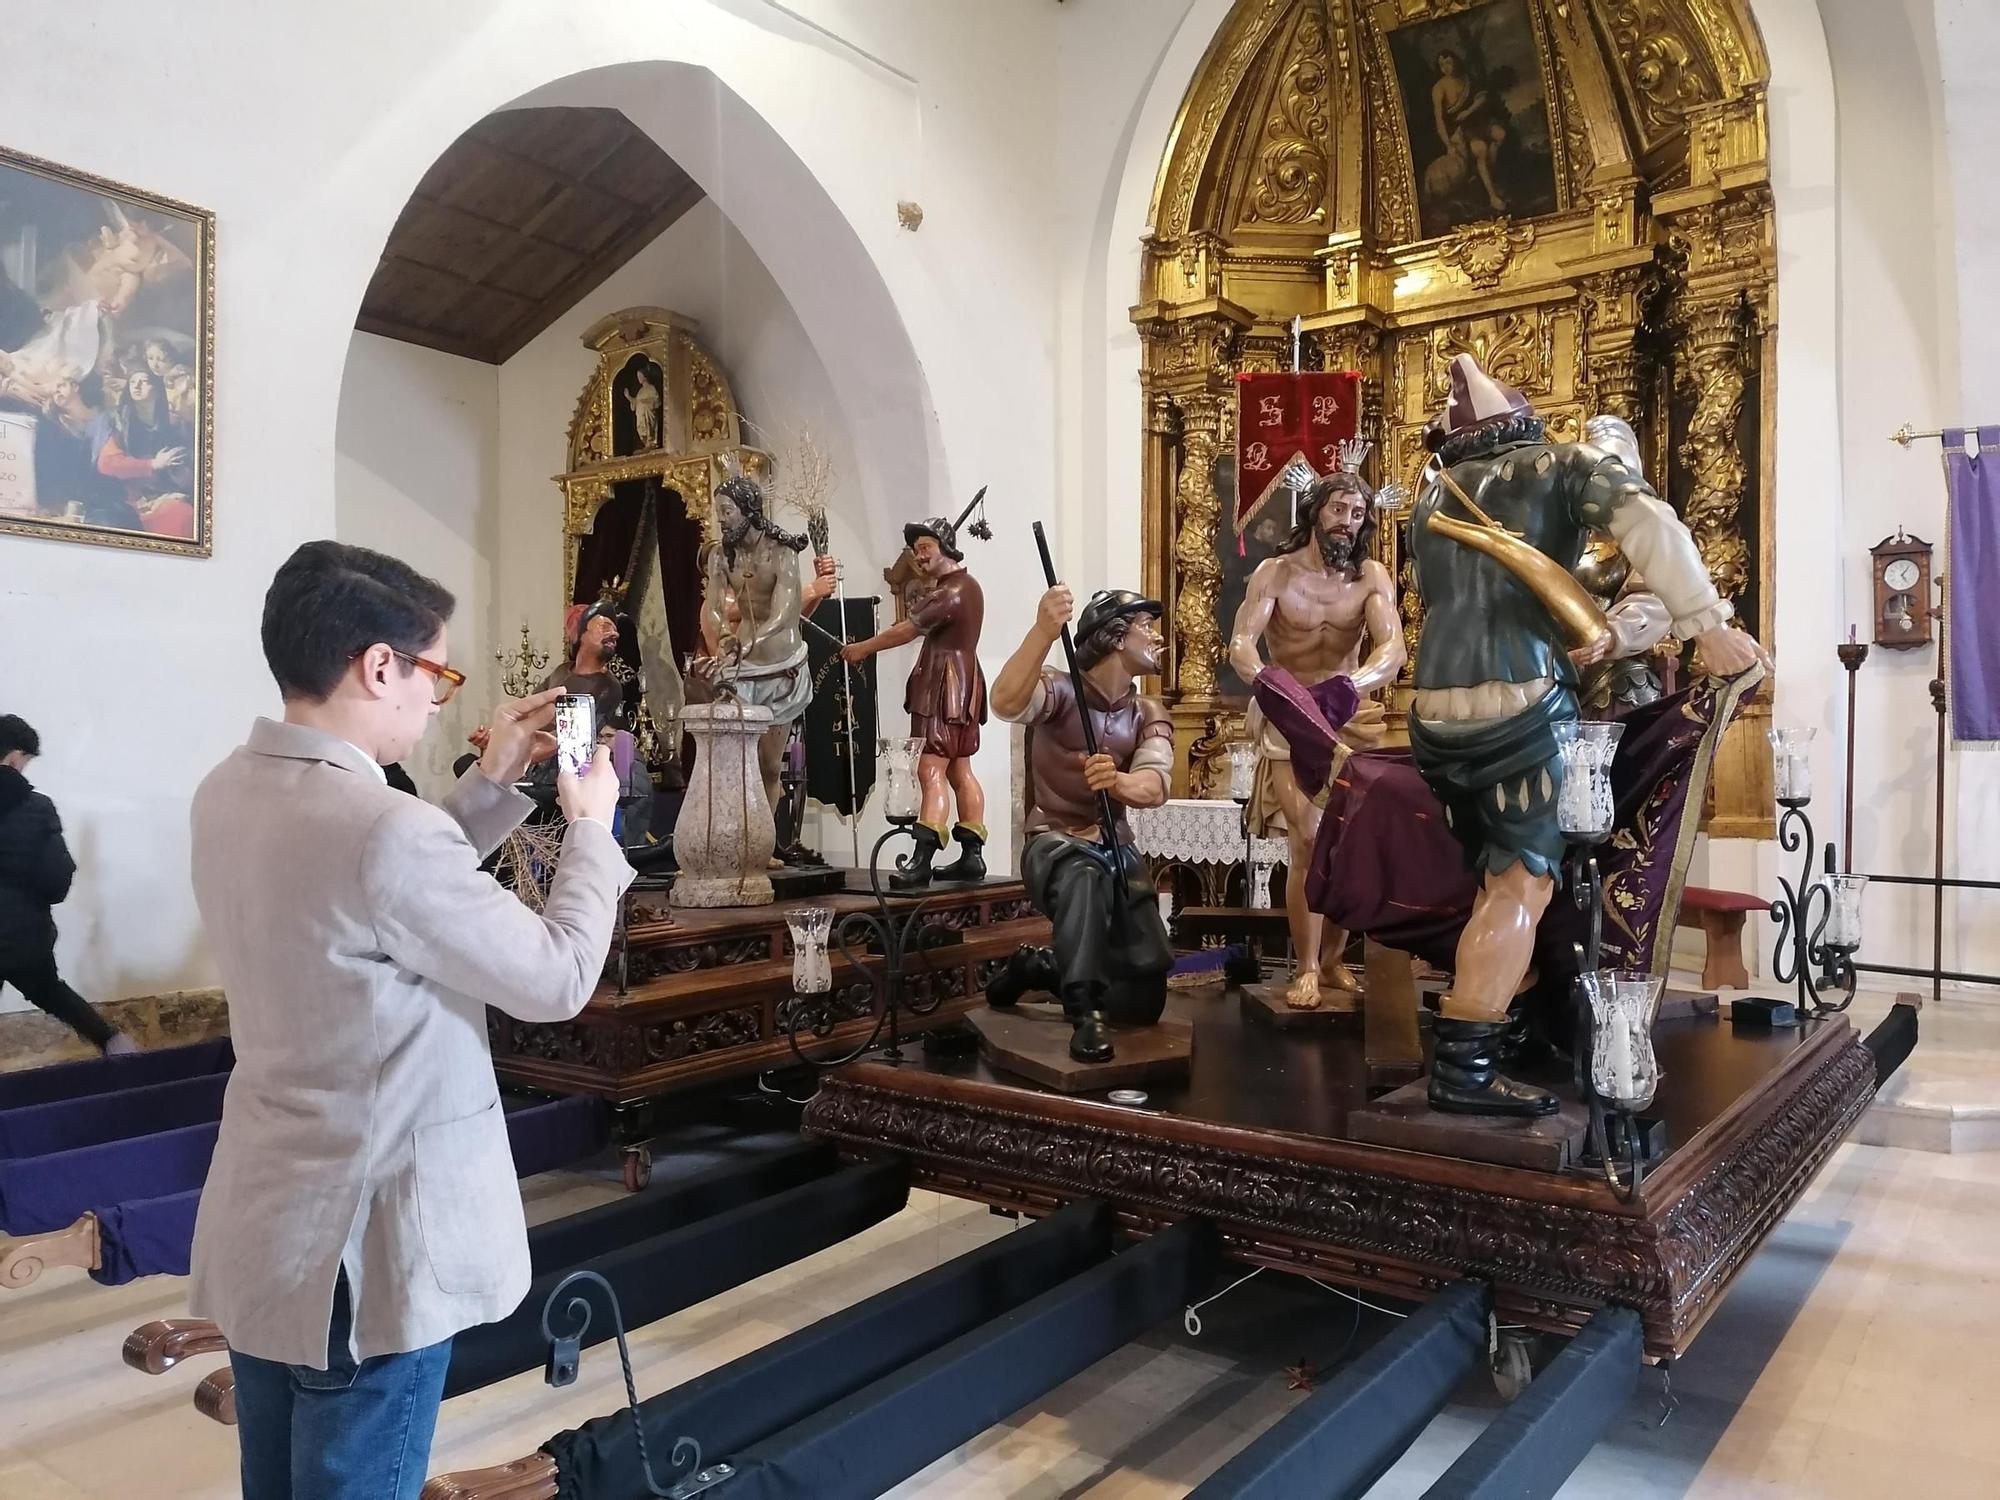 GALERÍA | Dos pasos de la Semana Santa de Toro recobran su esplendor